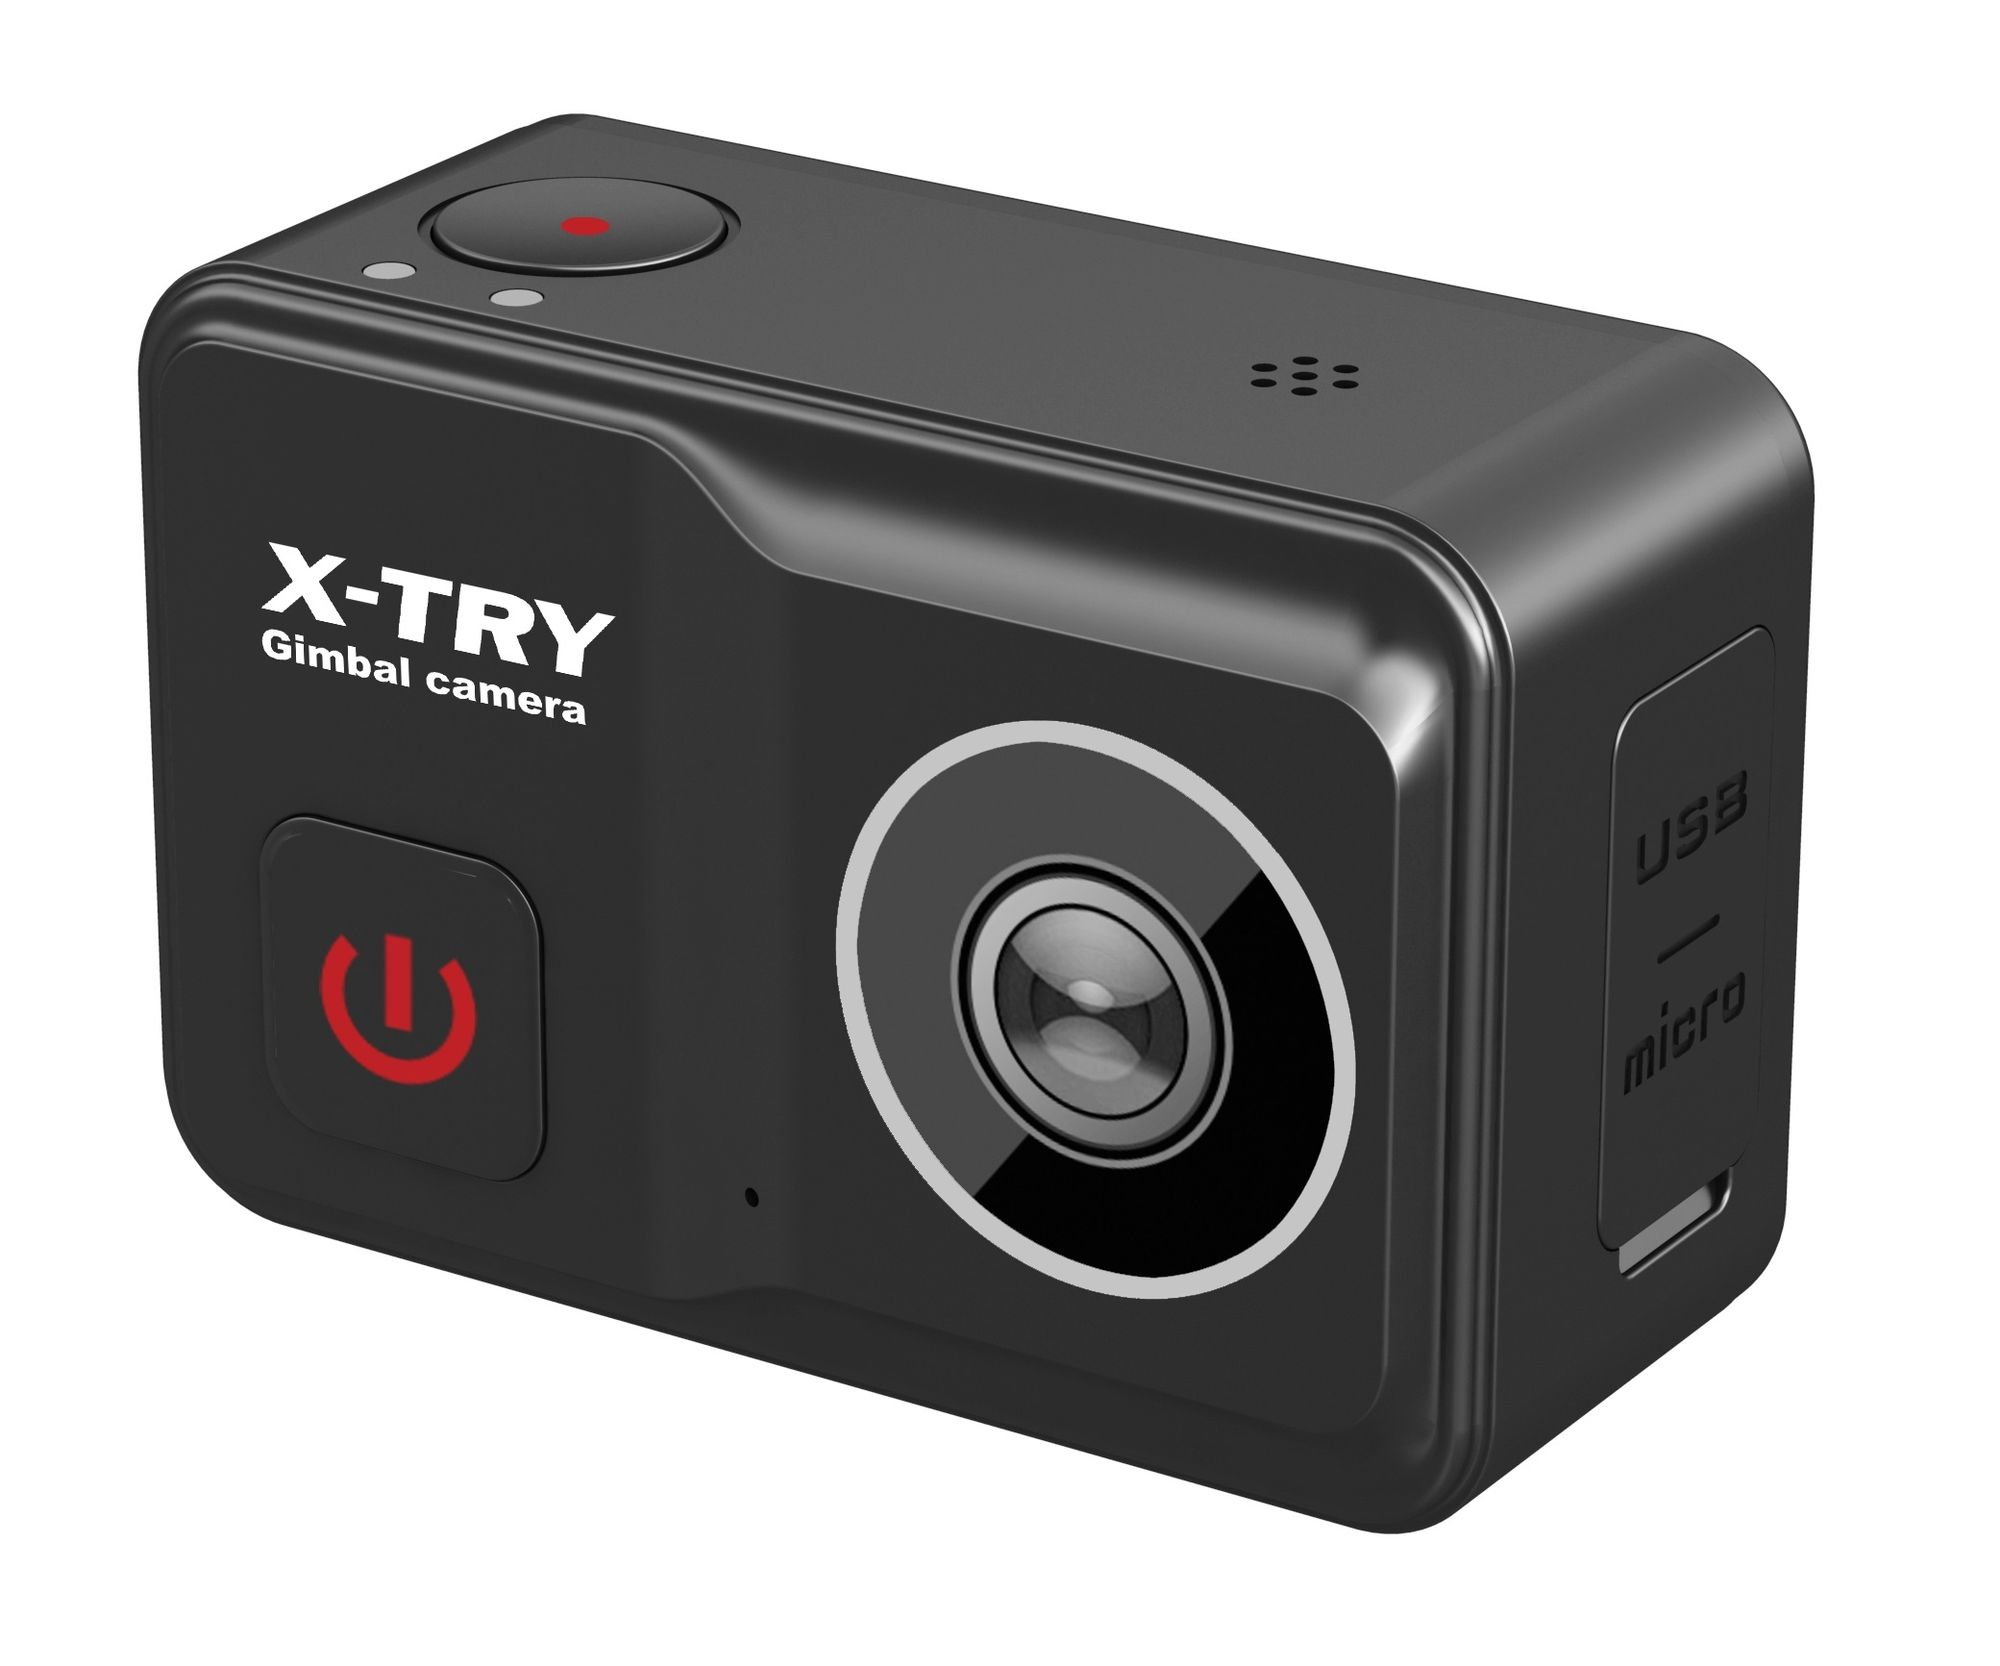 Экшн камера X-Try XTC502 Gimbal Real 4K/60FPS WDR Wi-Fi Power экшн камера x try xtc502 gimbal real 4k 60fps wdr wi fi power